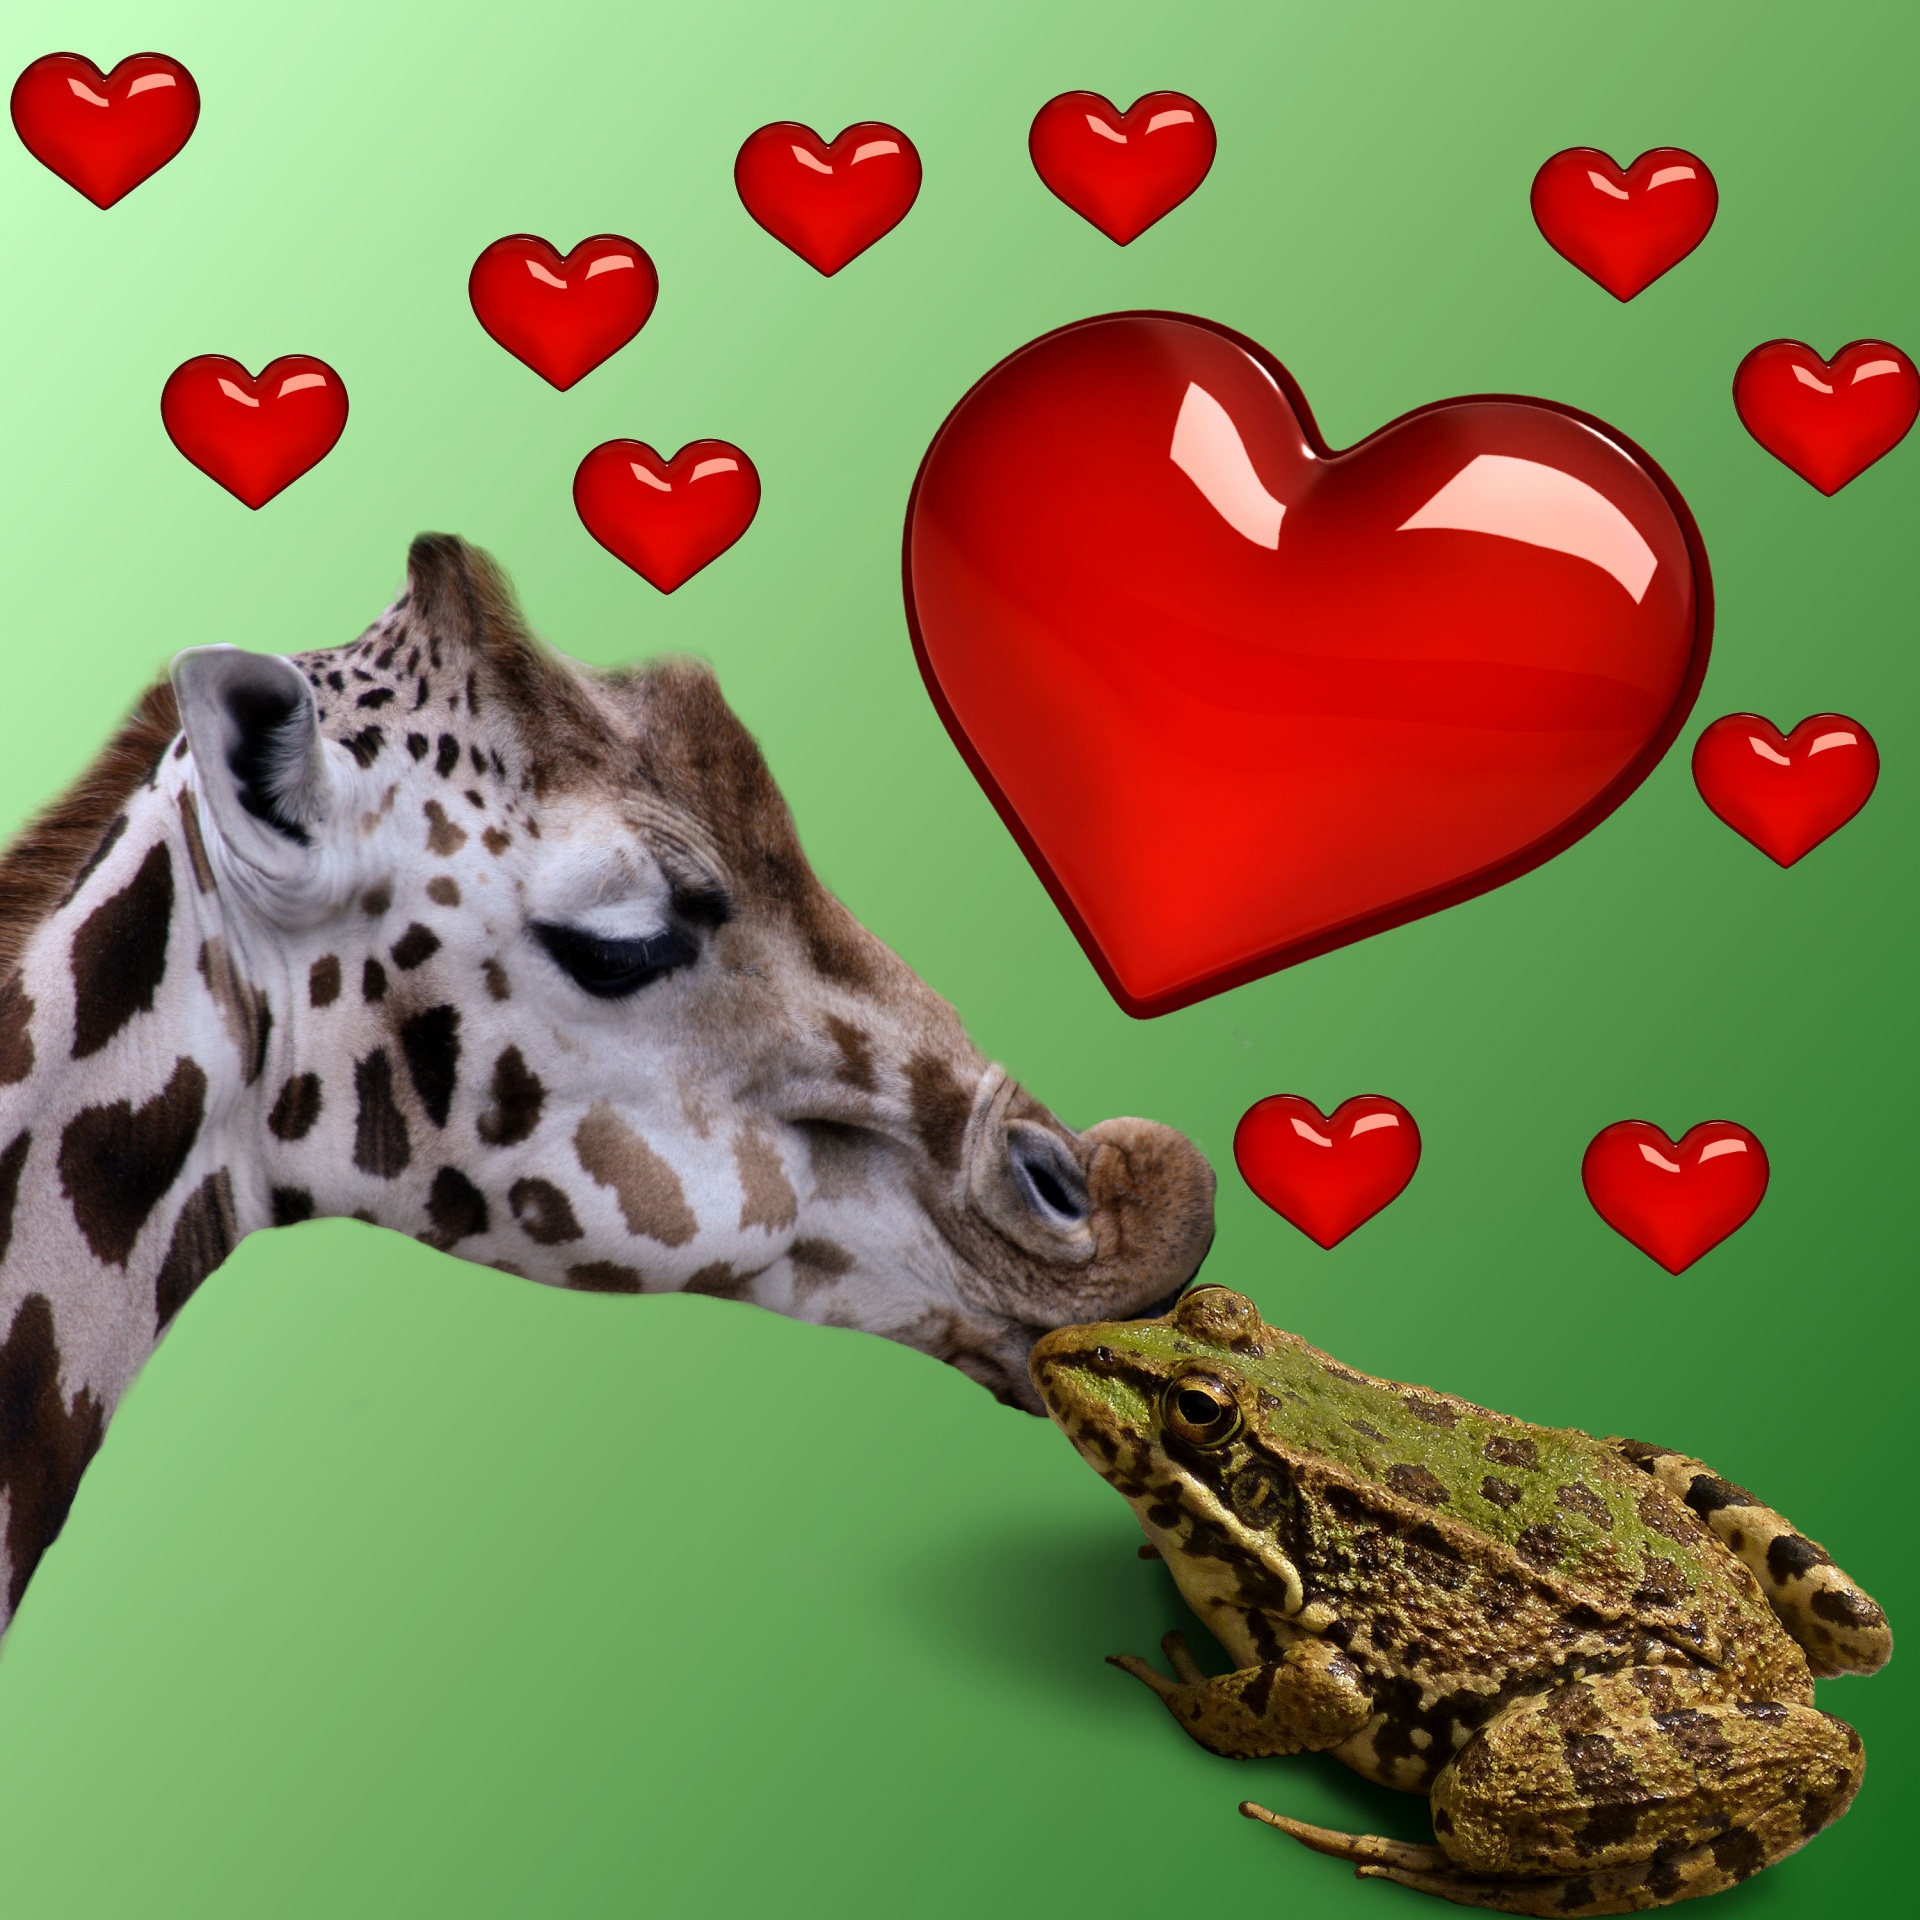 Meilė,  Širdis,  Taika,  Meilė,  Santykiai,  Pasaulis,  Fonas,  Varlė,  Gyvūnas,  Žirafa